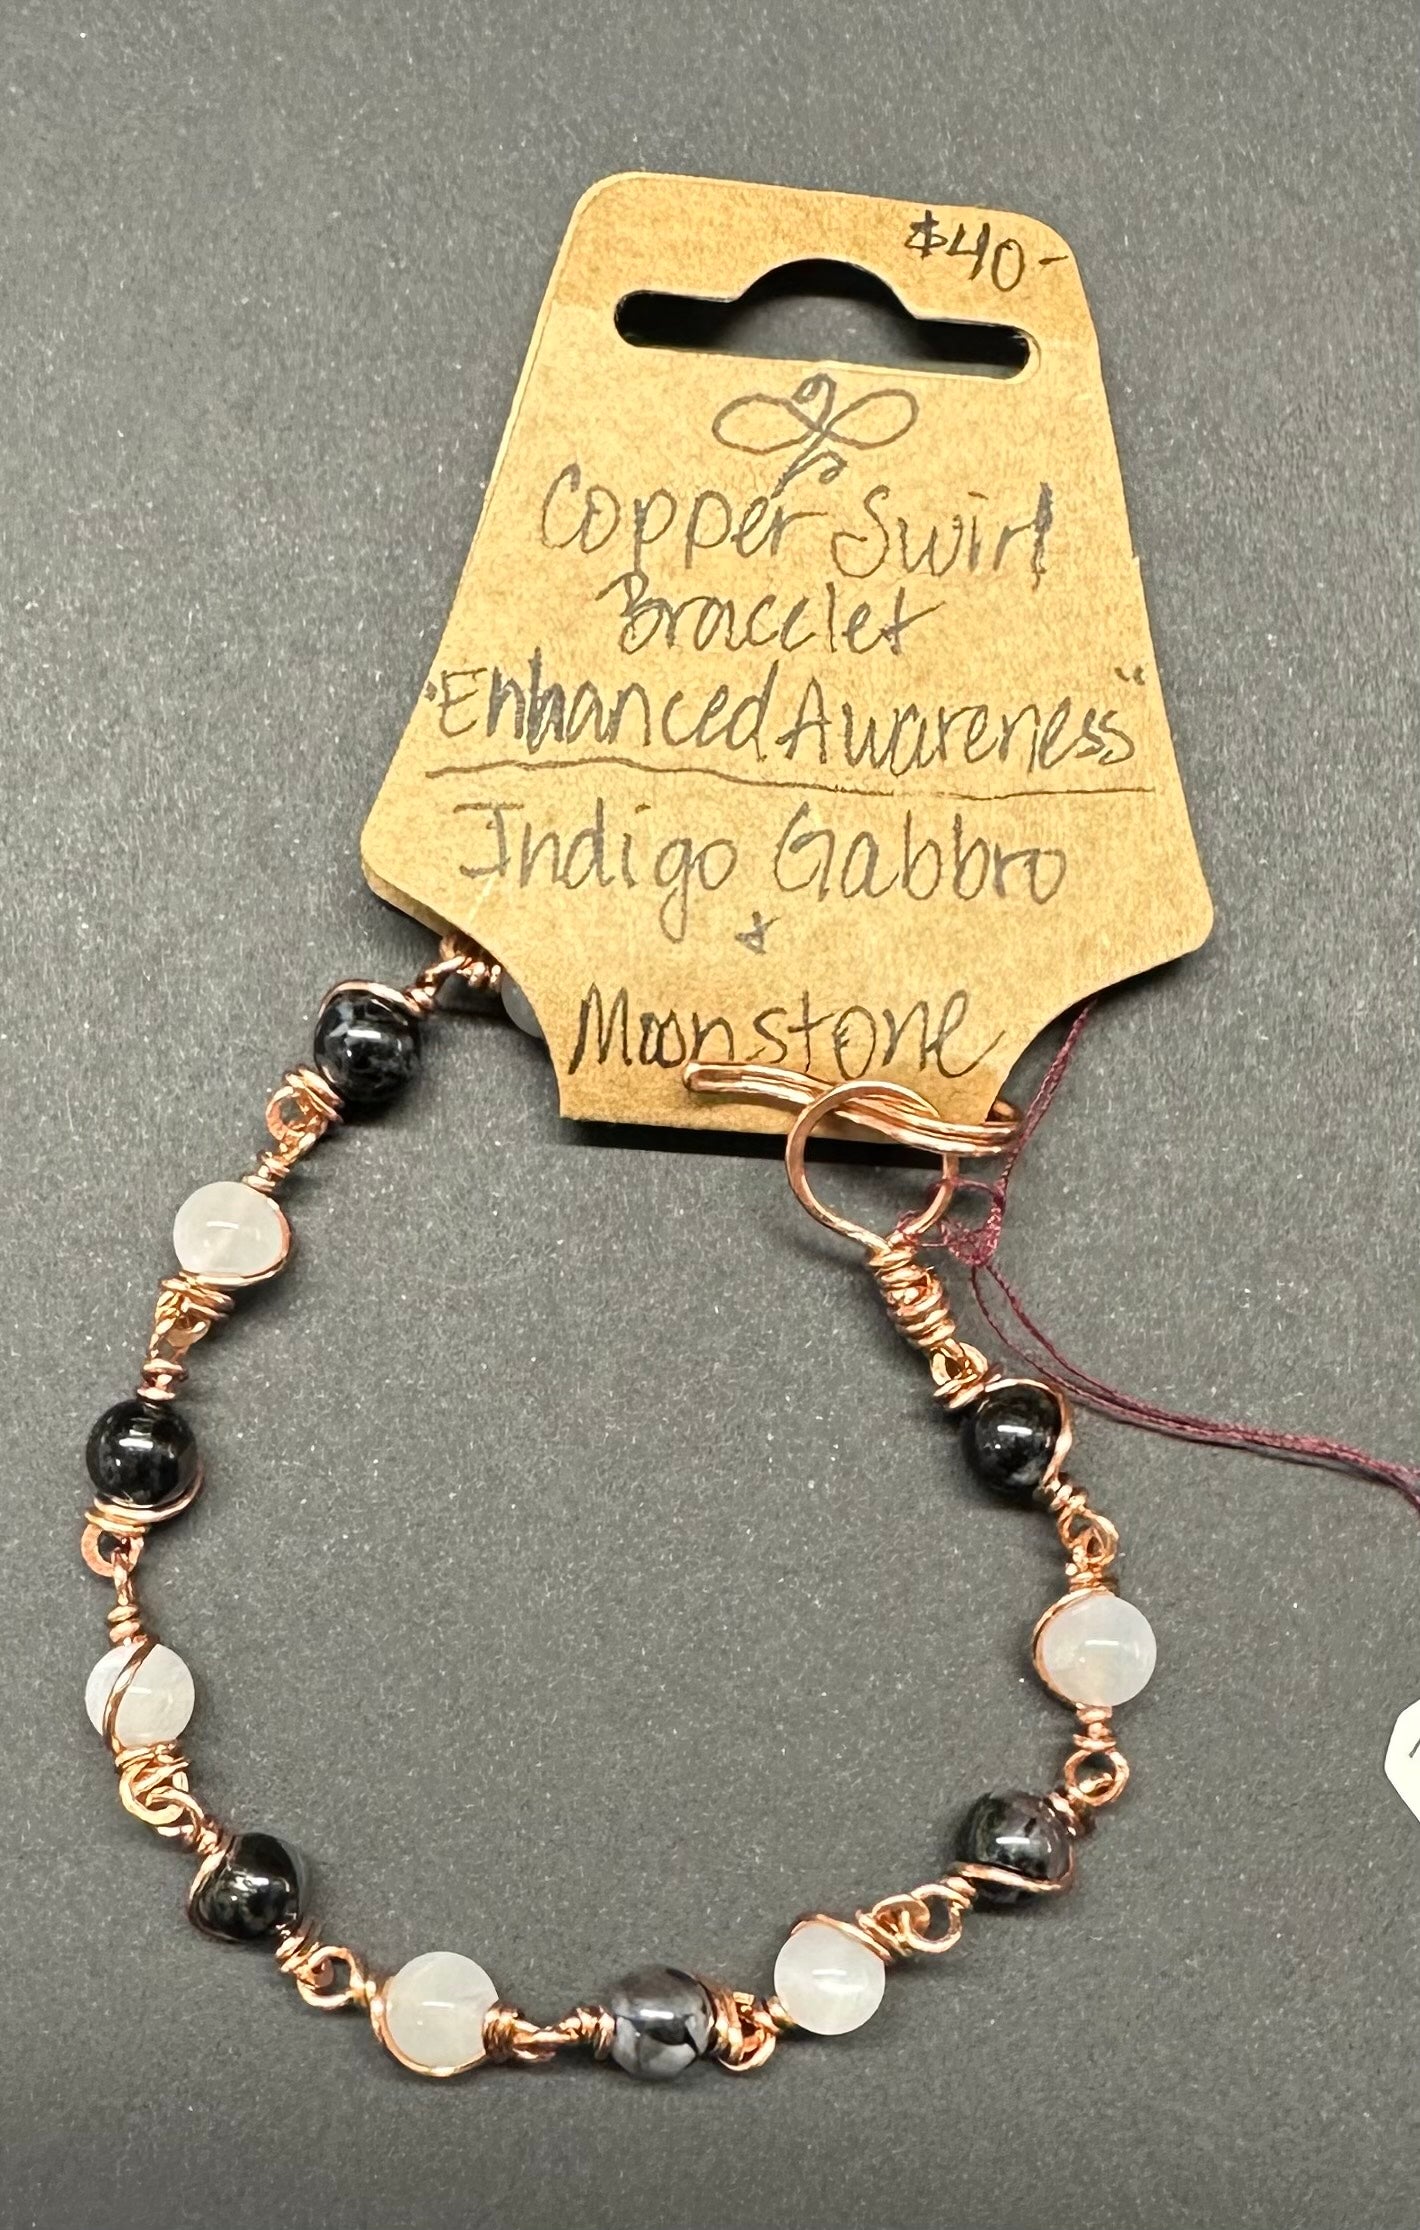 Copper Swirl Bracelet "Enhanced Awareness"